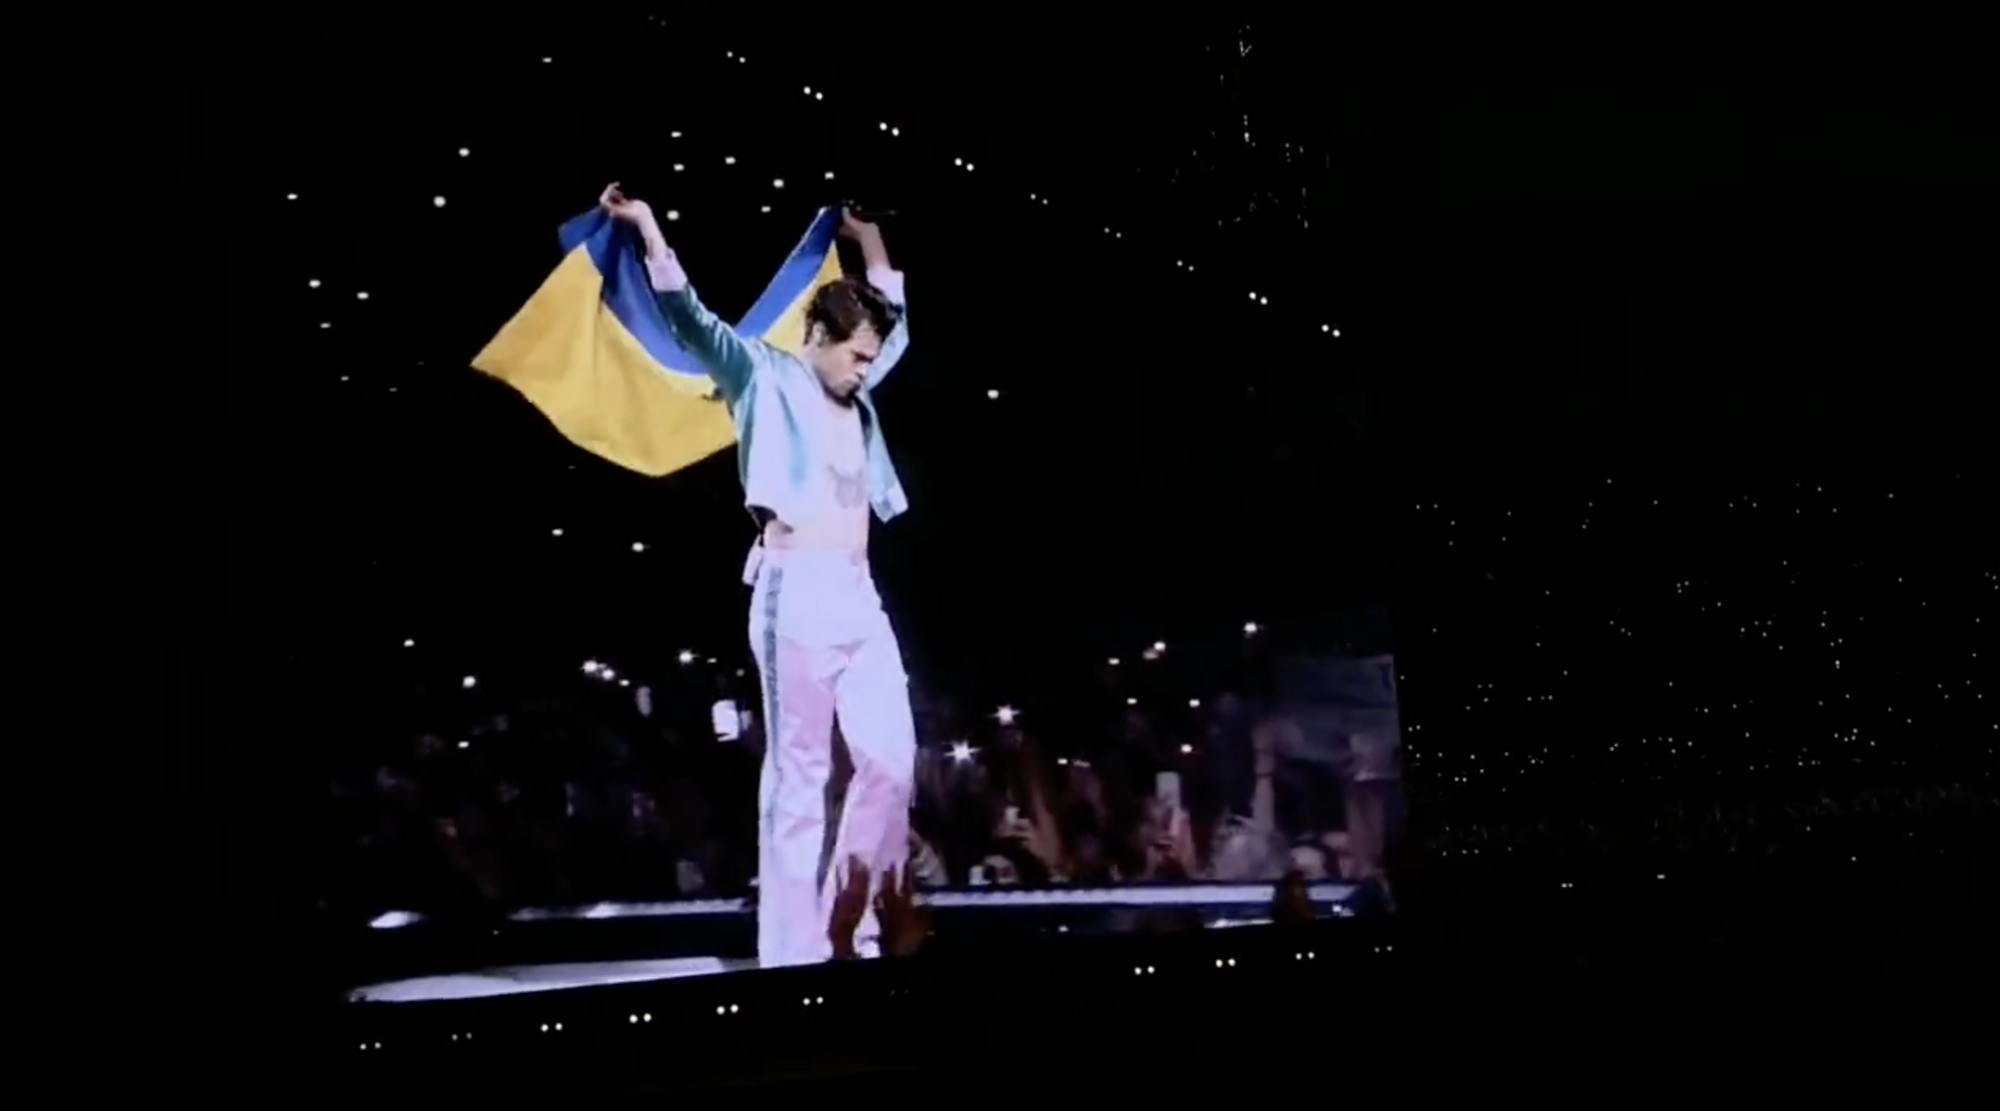 Гарри Стайлз на сцене поднял украинский флаг: зал "взорвался" овациями и криками